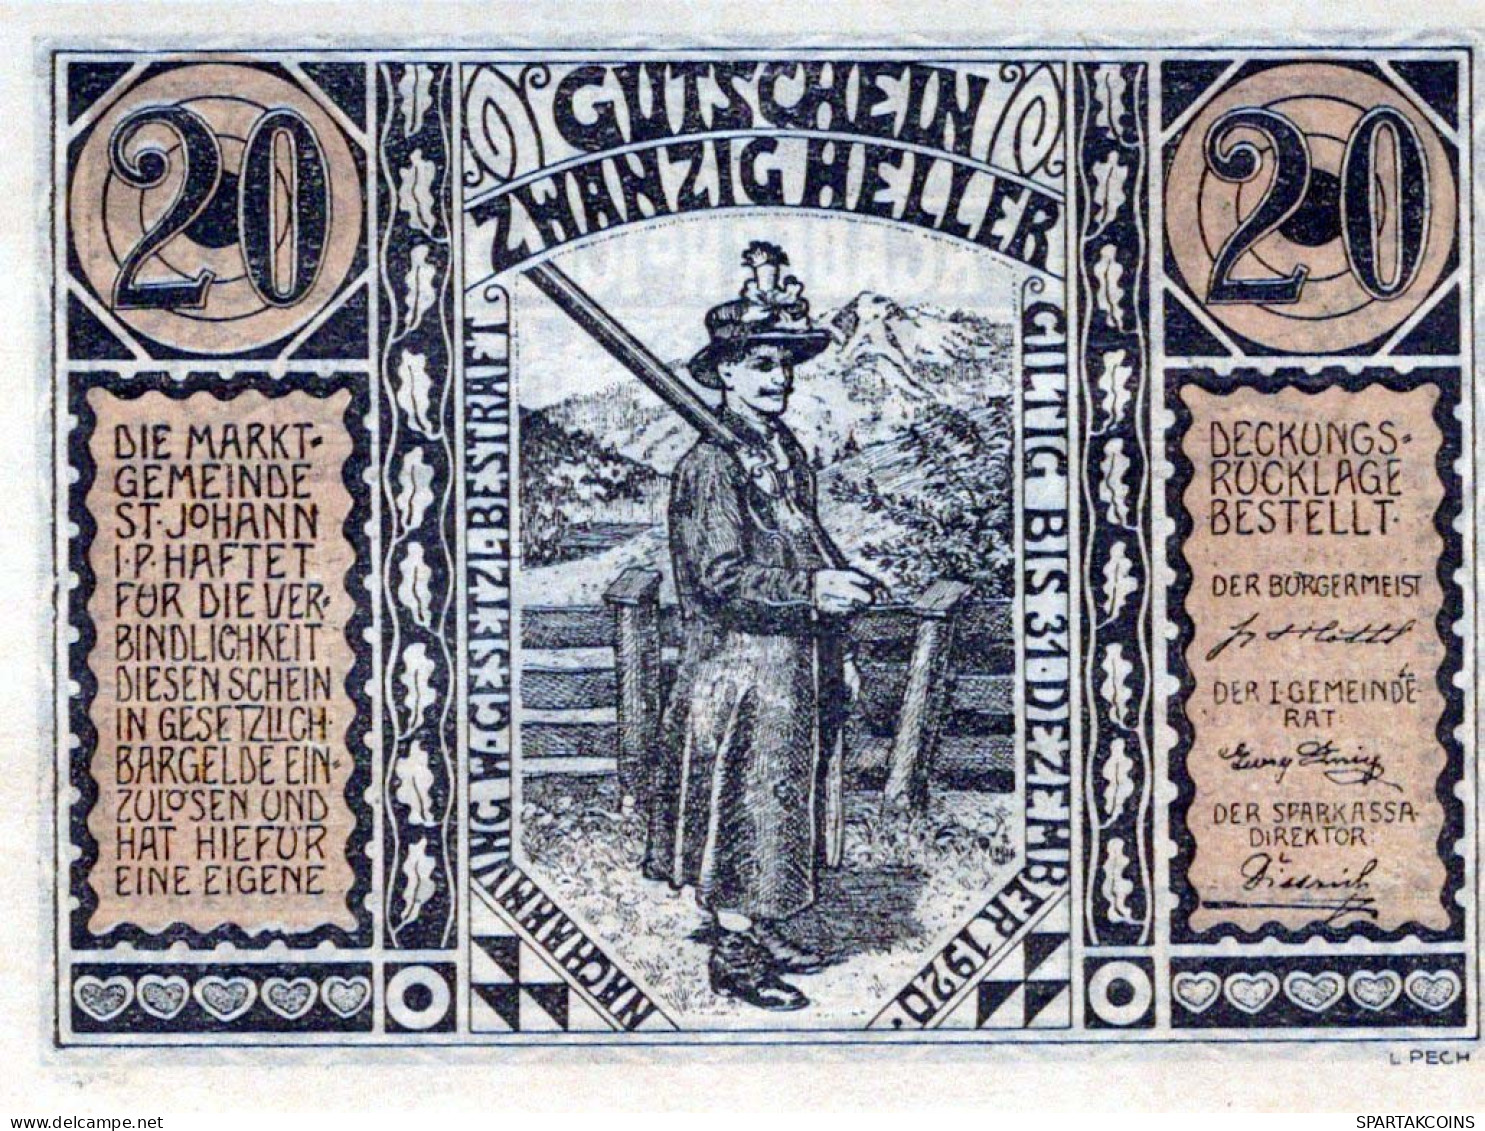 20 HELLER 1920 Stadt SANKT JOHANN IM PONGAU Salzburg Österreich Notgeld Papiergeld Banknote #PG680 - [11] Emissions Locales